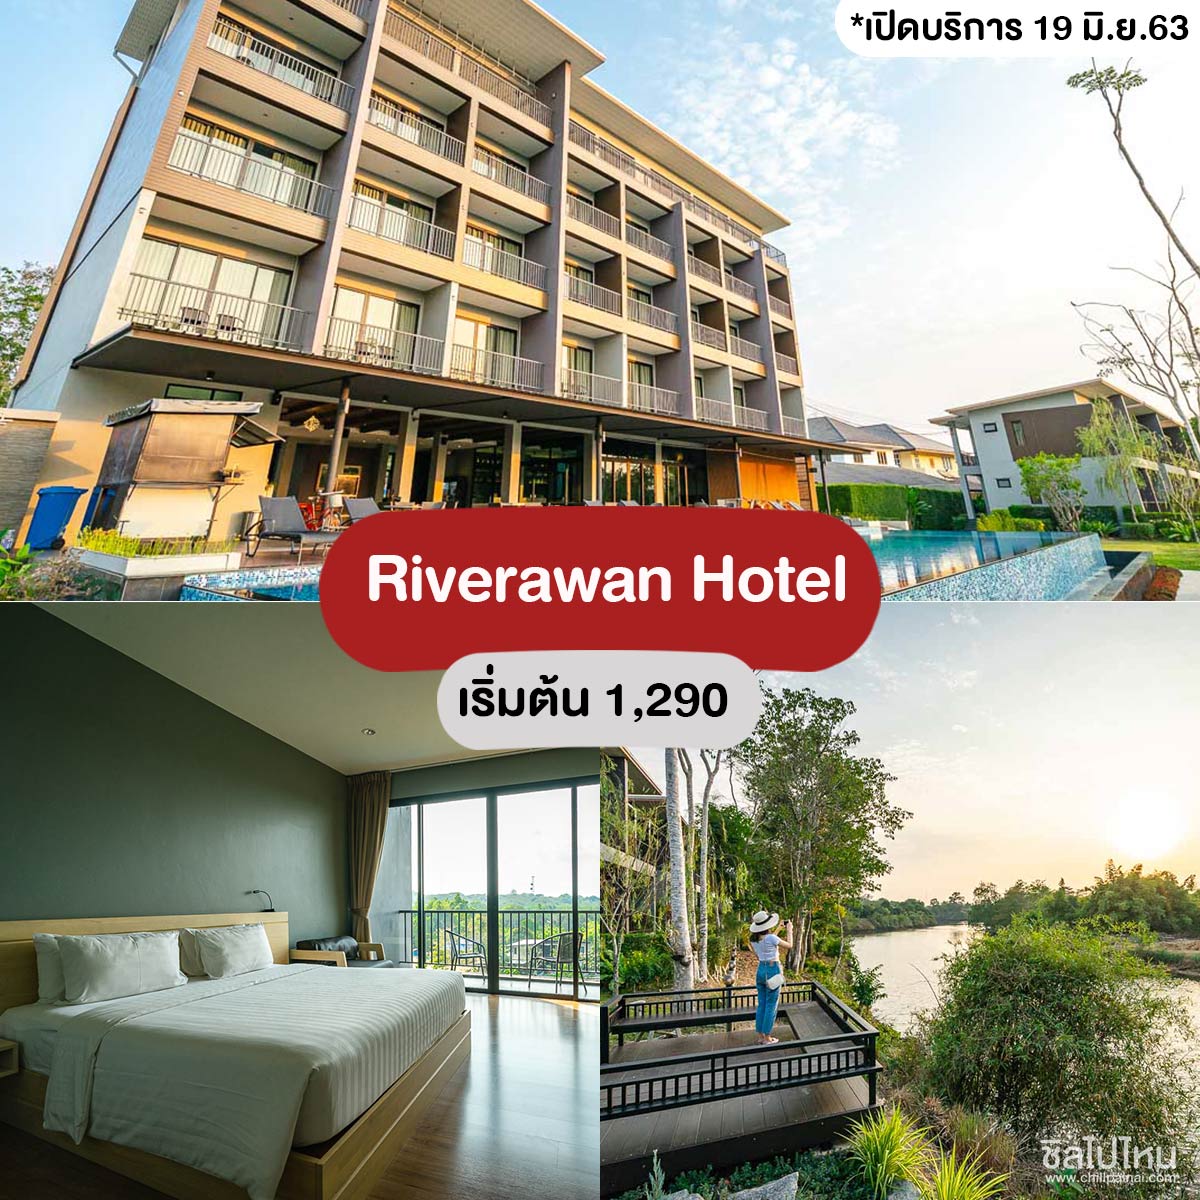 Riverawan Hotel - ที่พักจันทบุรี (โรงแรมริเวอร์ราวรรณ)